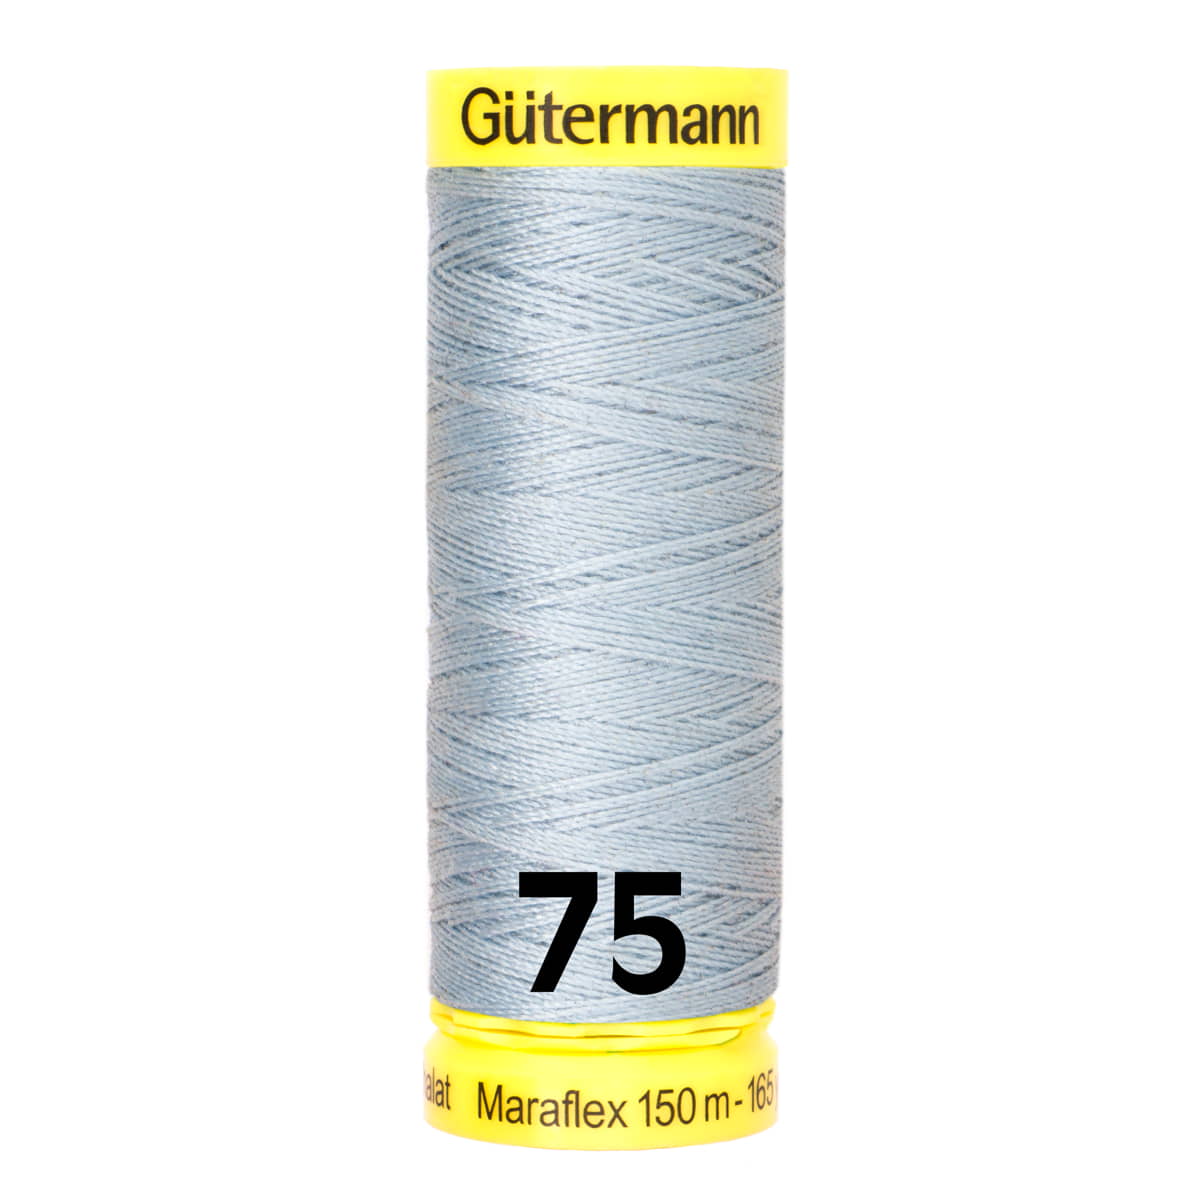 Gütermann MaraFlex 150m - 75 licht blauw GUTERMANN-MARAFLEX-150-75 4029394998416 - Fourniturenkraam.nl